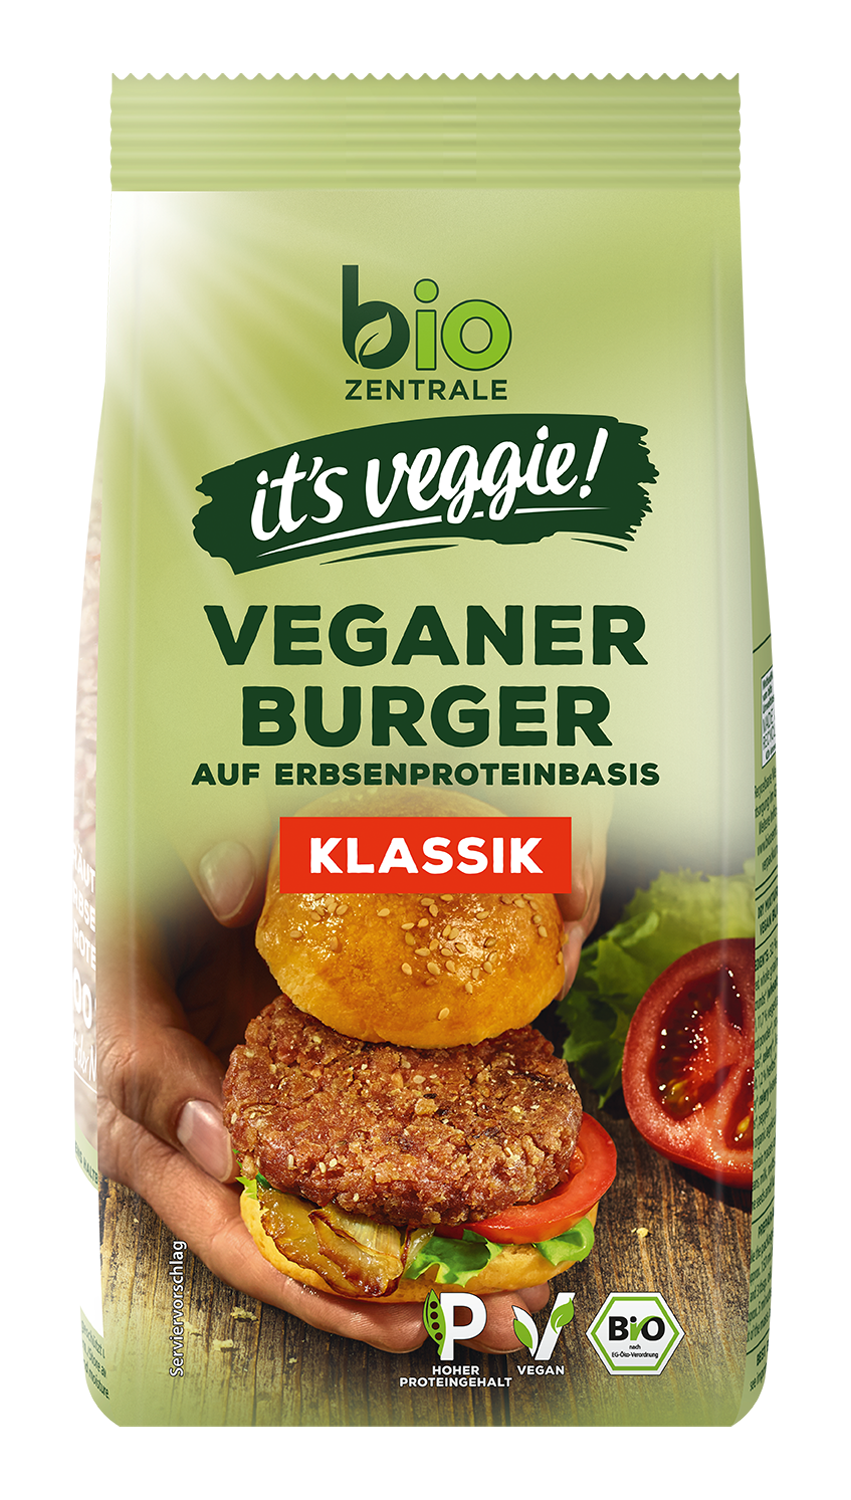 Veganer Burger Klassik